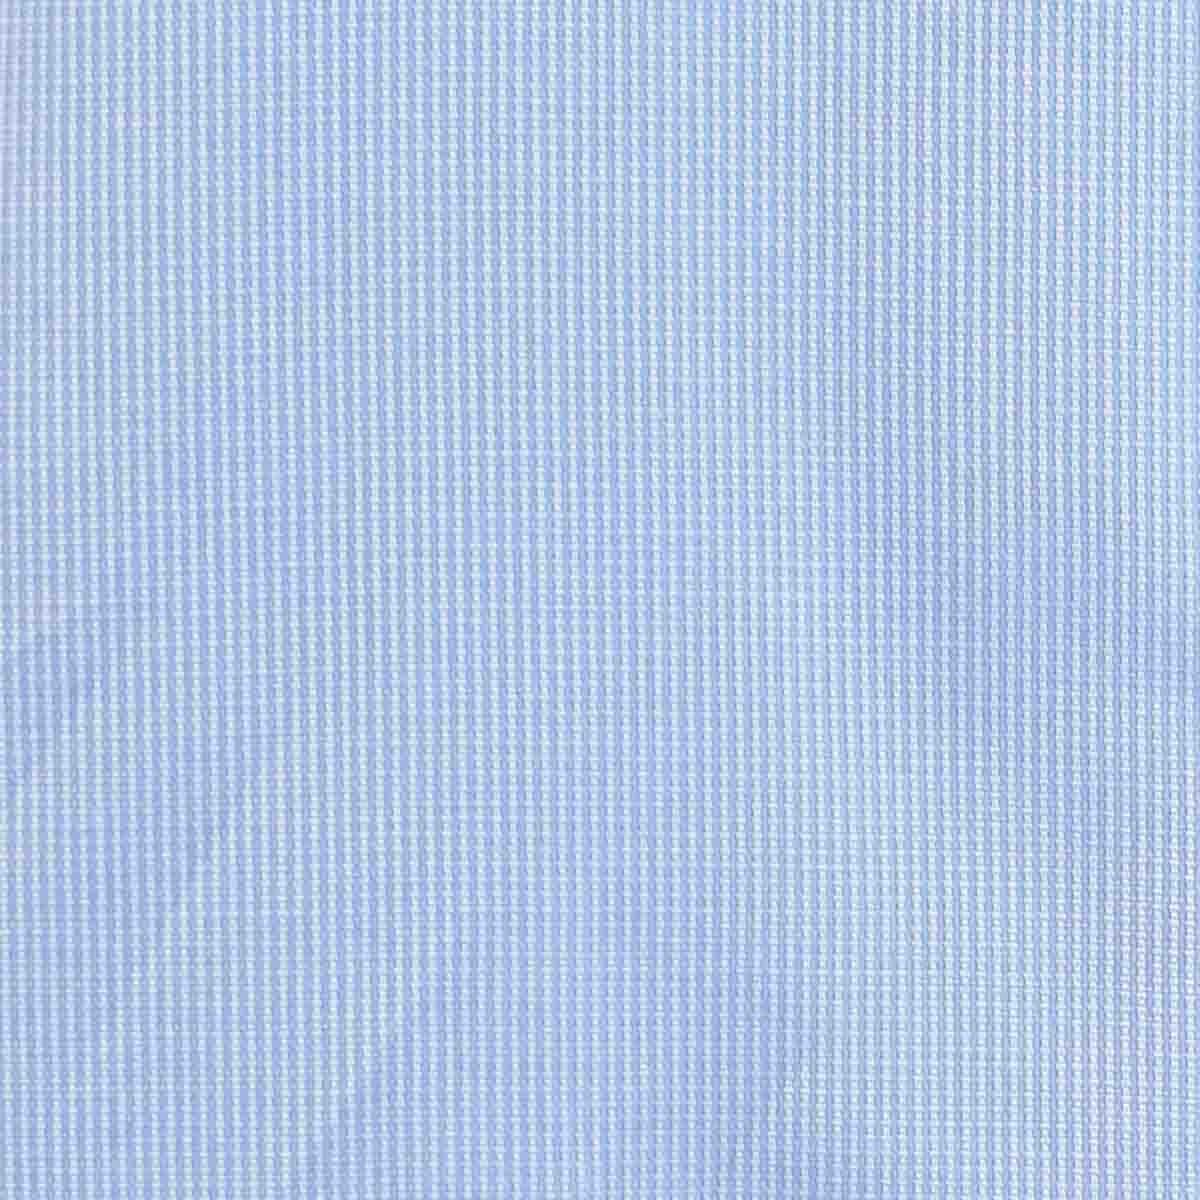 Camisa de Vestir Manga Larga Azul Claro Nina Ricci para Caballero